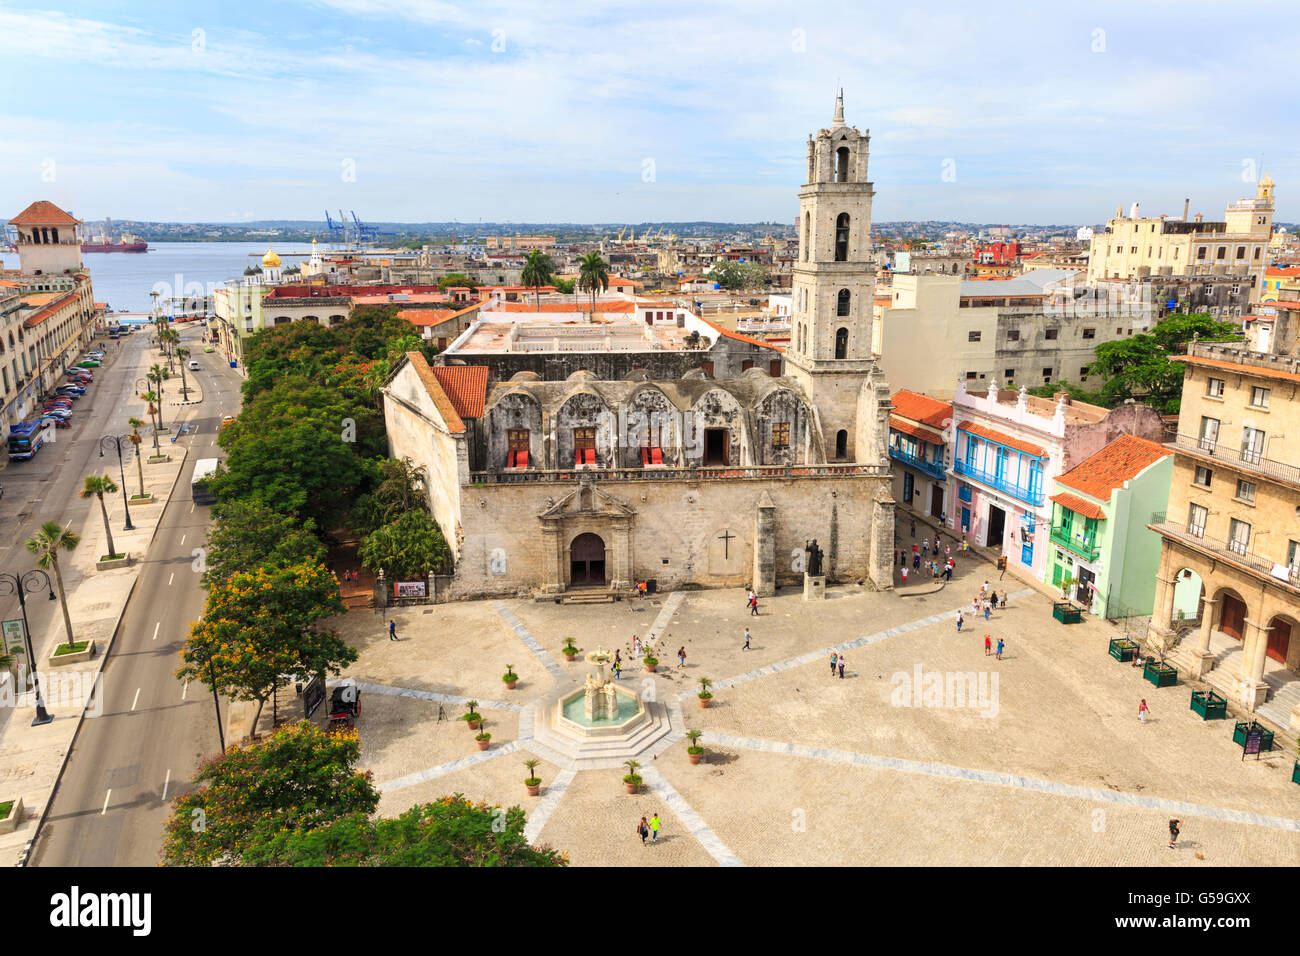 View across Plaza San Francisco de Asis Square and church towards the sea, La Habana Vieja, Havana, Cuba Stock Photo